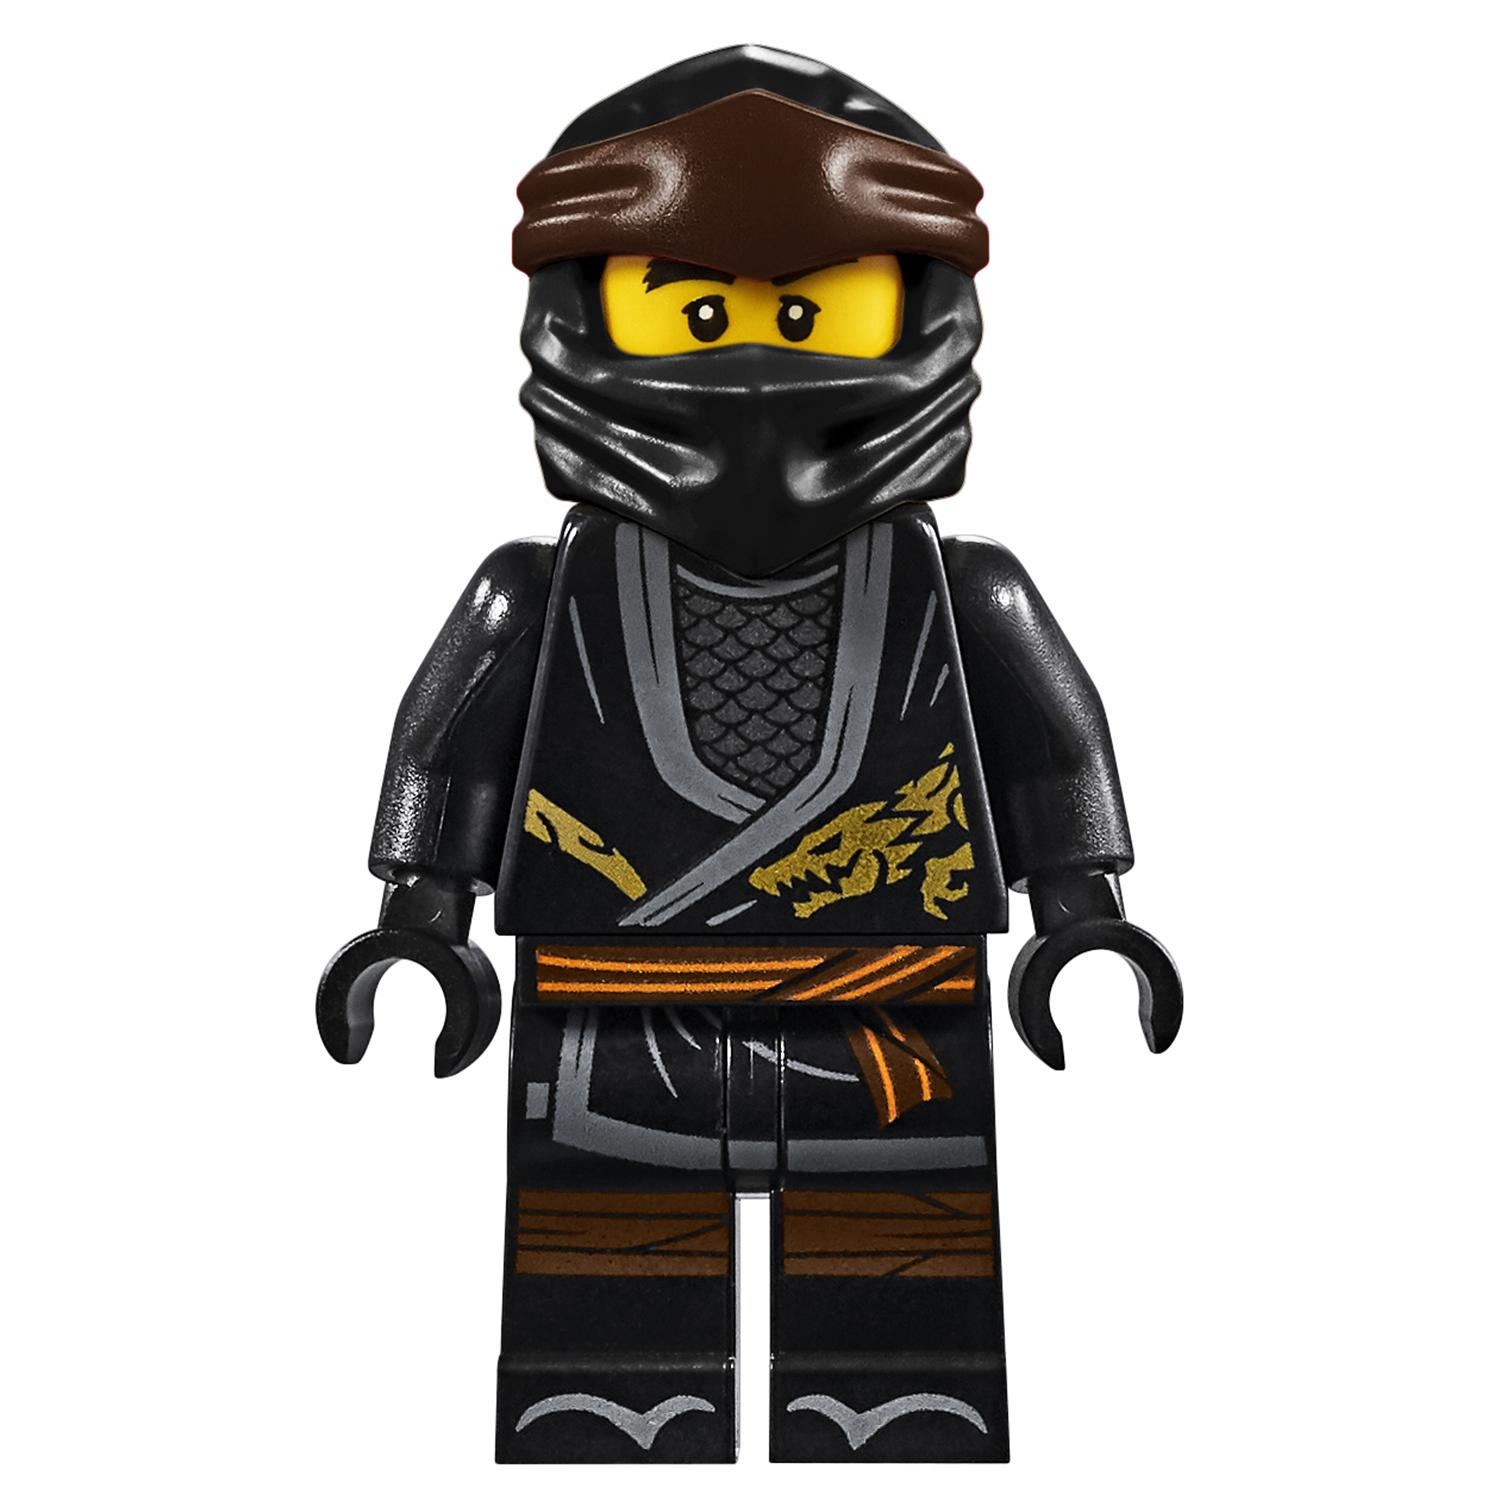 Конструктор LEGO Ninjago 